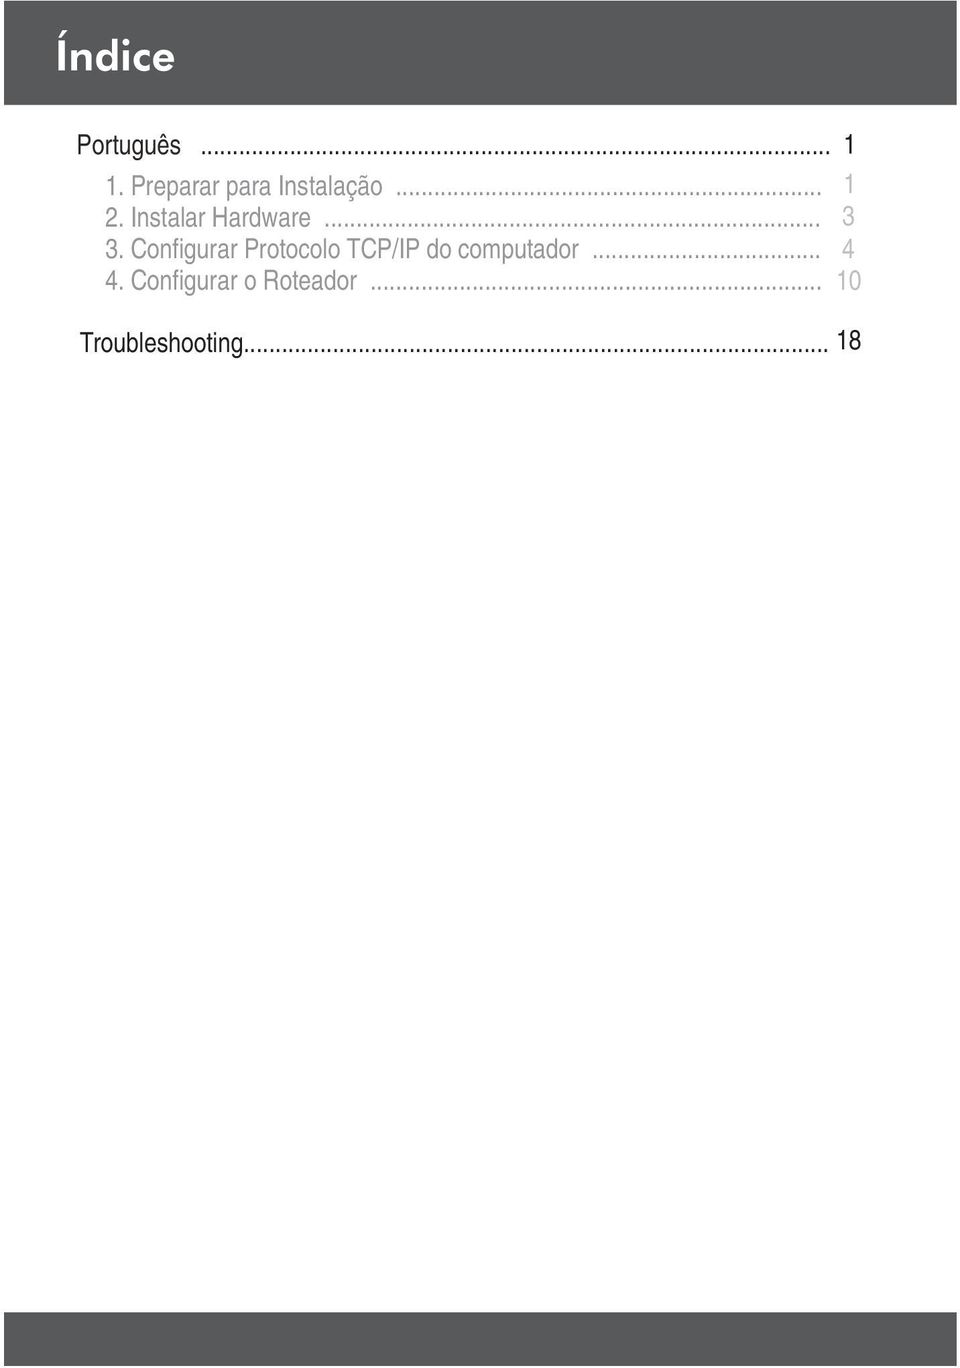 Configurar Protocolo TCP/IP do computador.